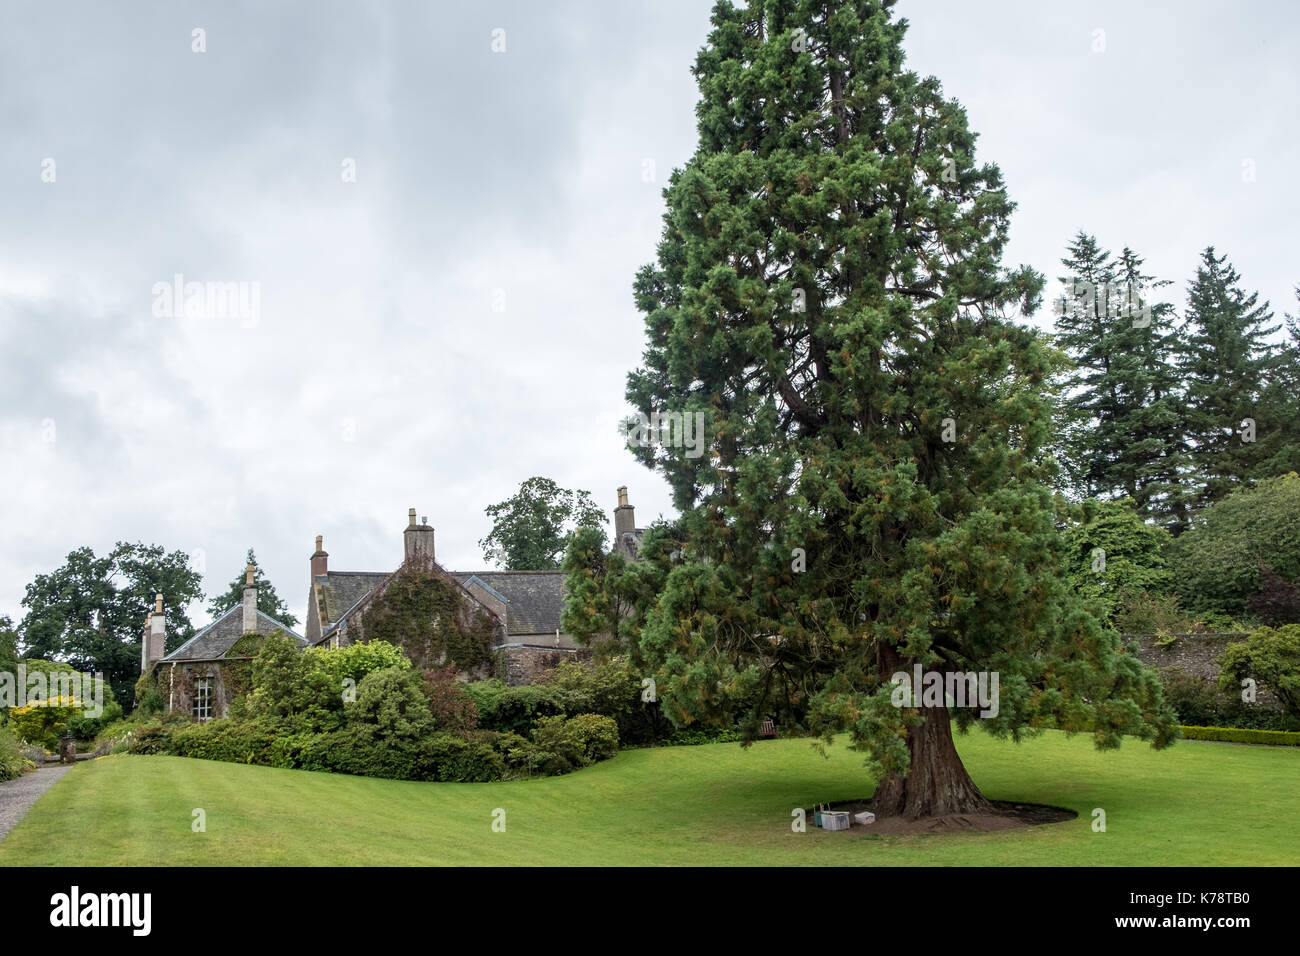 Grand arbre de jardin en face de chalet au jardin geilston dunbarton Ecosse Banque D'Images